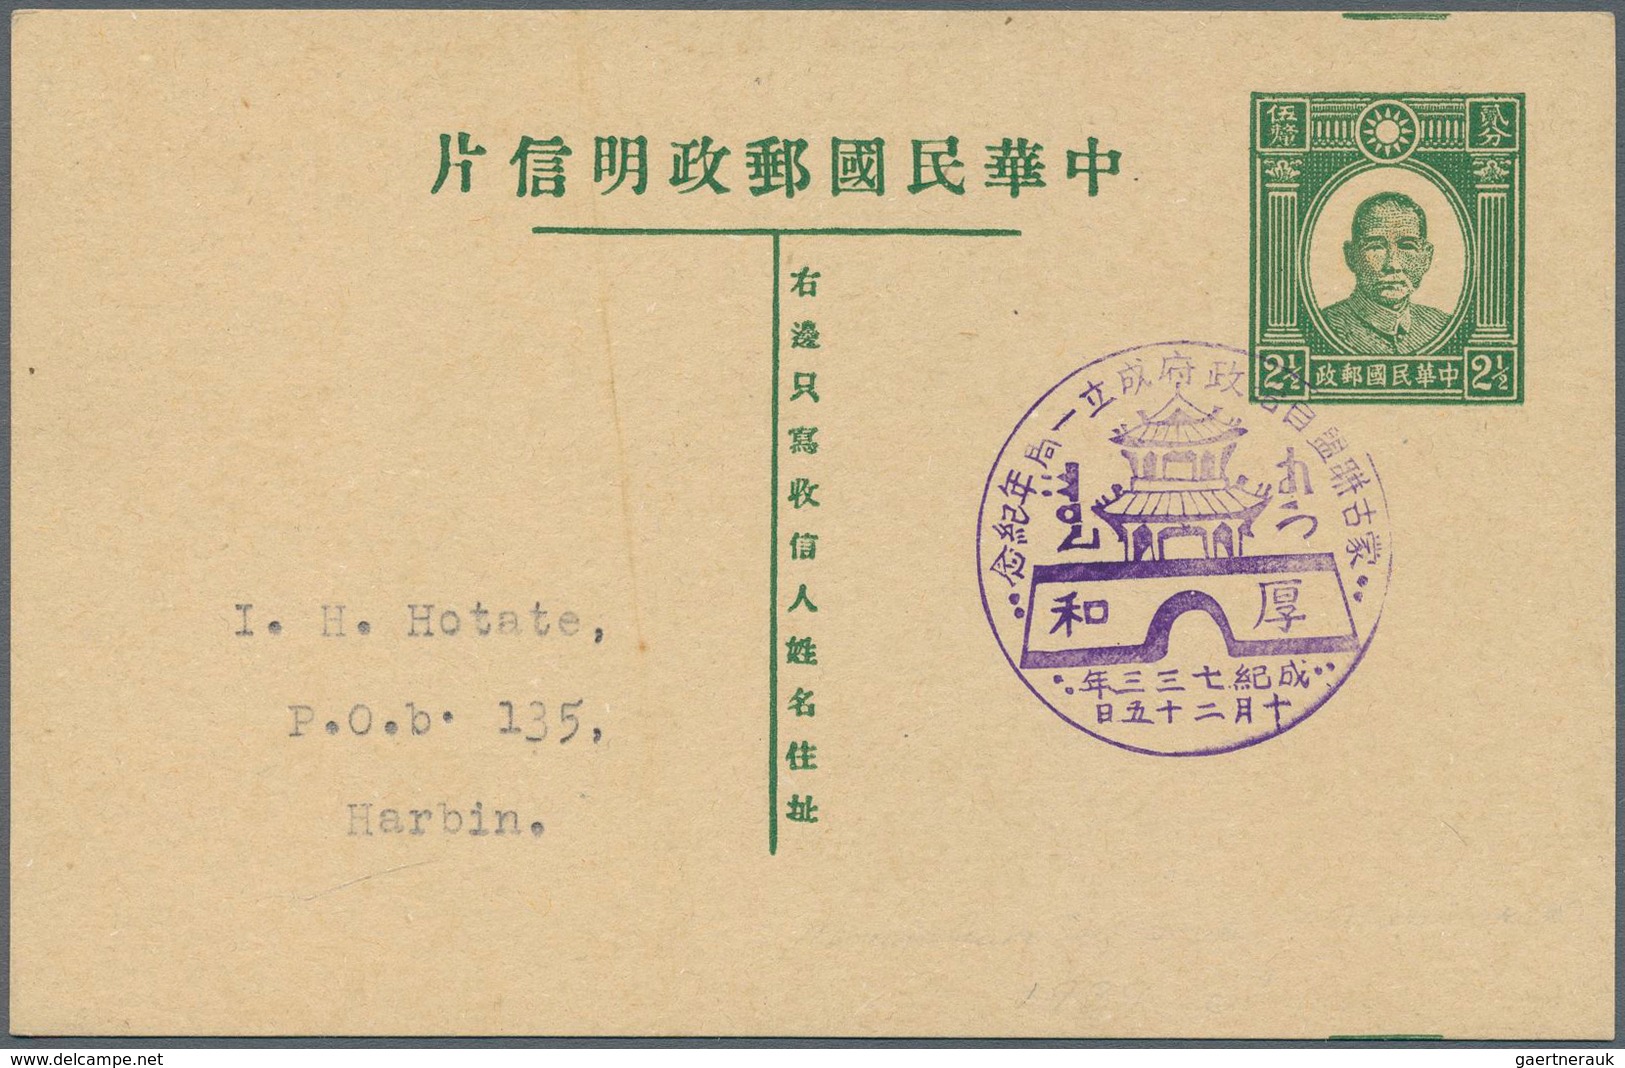 22930 Japanische Besetzung  WK II - China / Mengkiang - Inner Mongolia: 1939/44 (ca.), cto stationery card